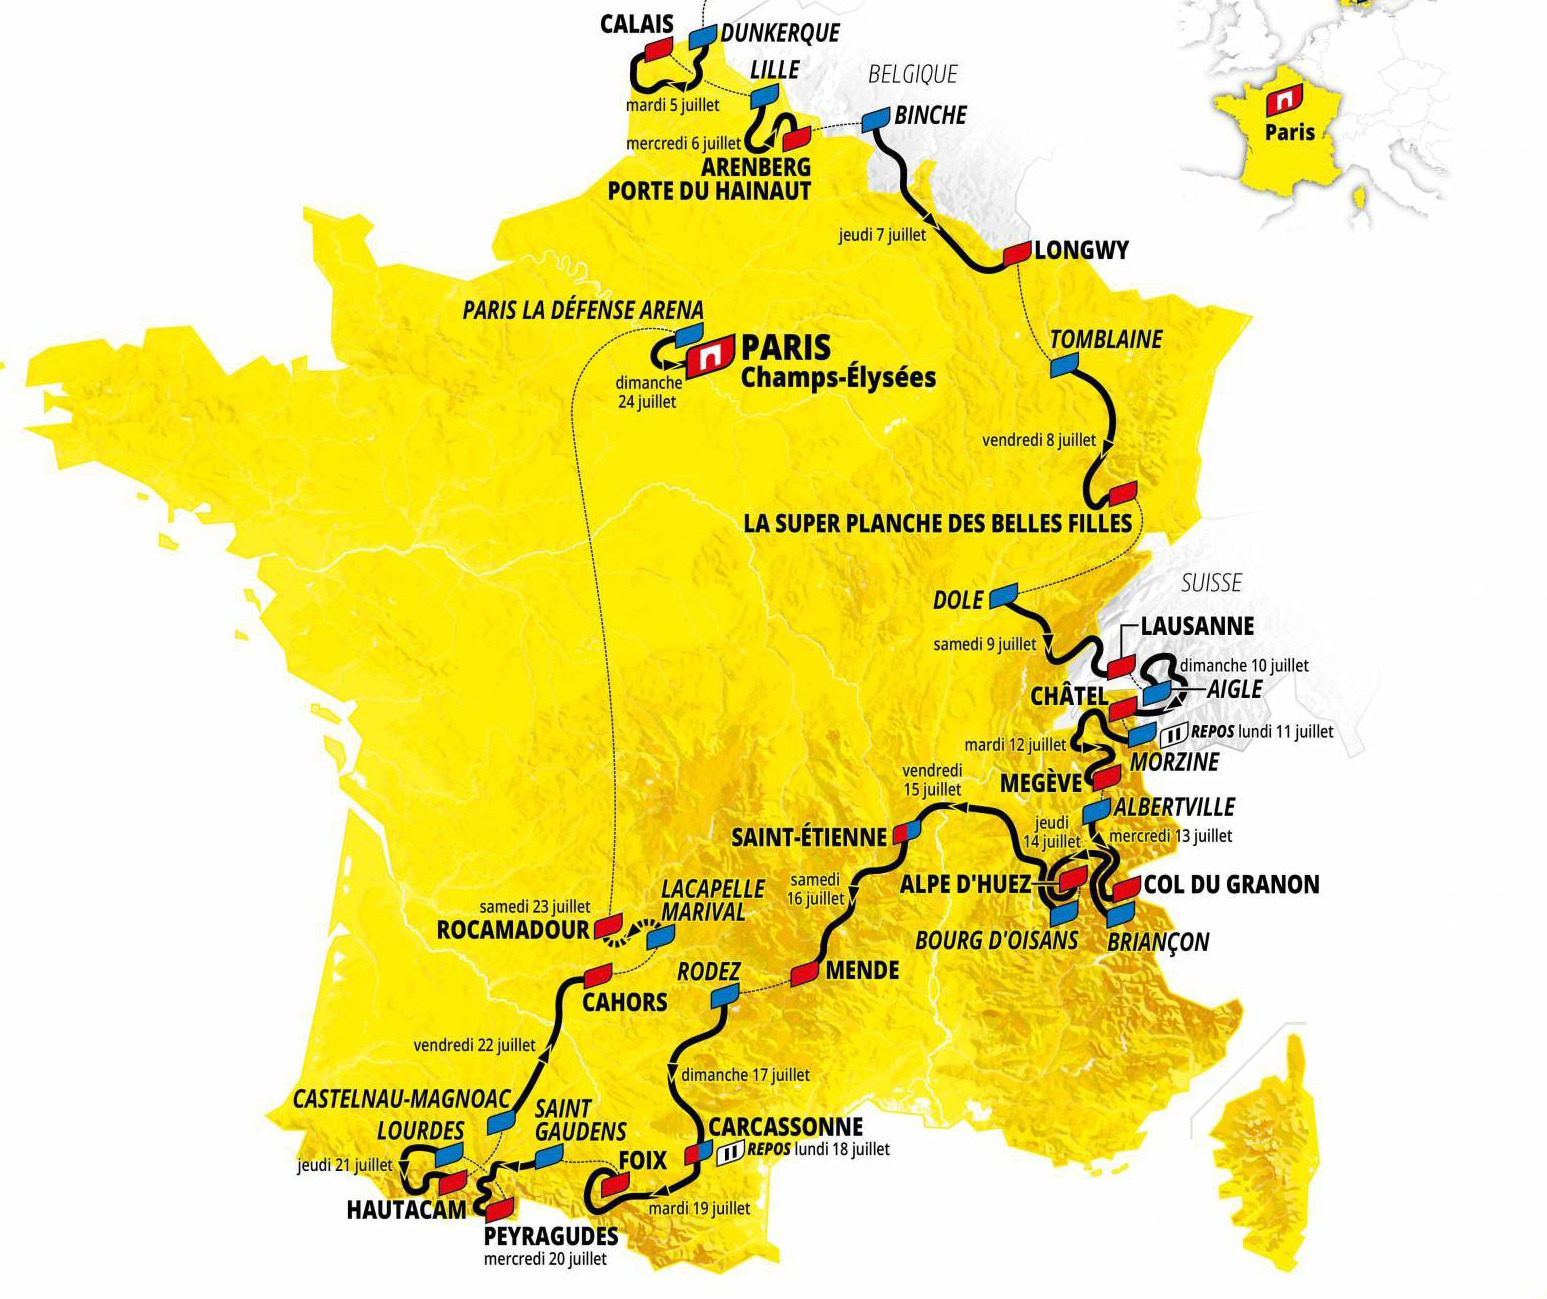 Tour de France Calendar Cheese Company